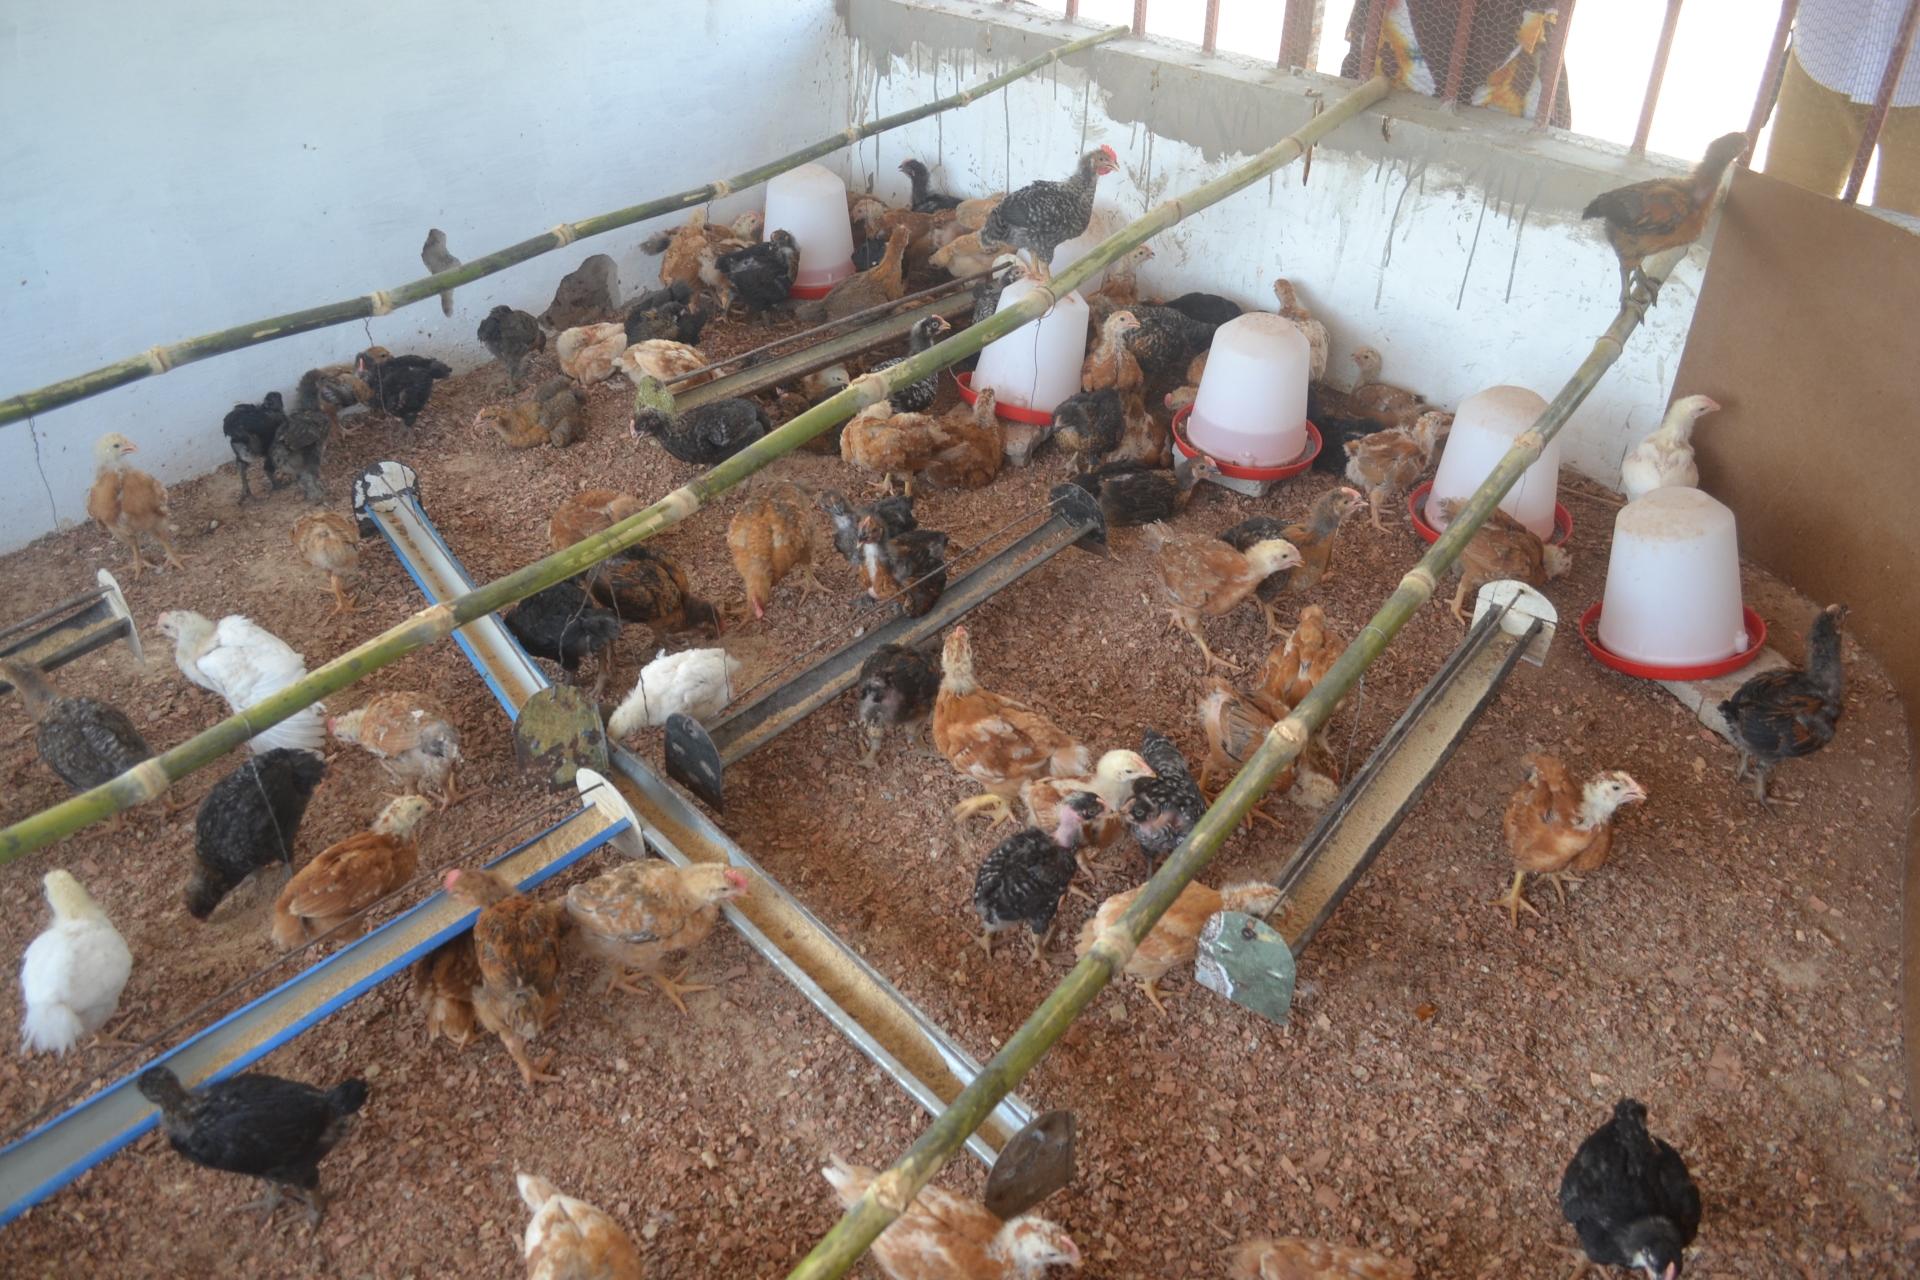 Giovani pulcini crescono nel pollaio gestito dai migranti di ritorno Guinea Bissau Mani Tese 2017